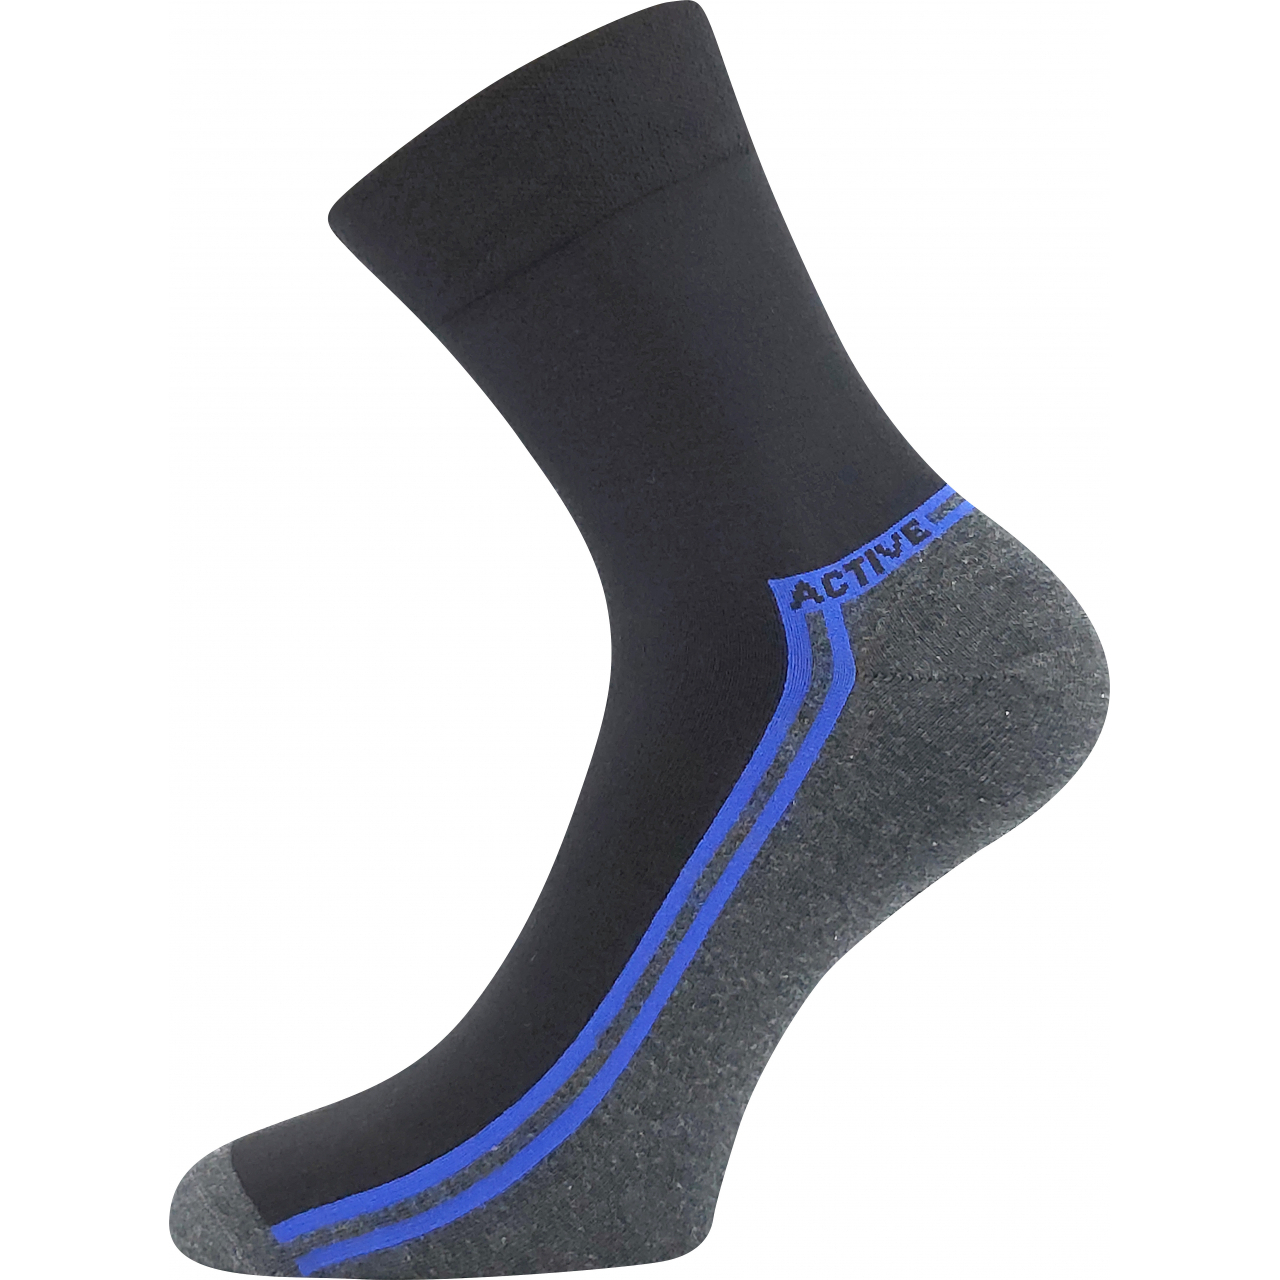 Ponožky pánské slabé Lonka Roger 02 - černé-modré, 39-42